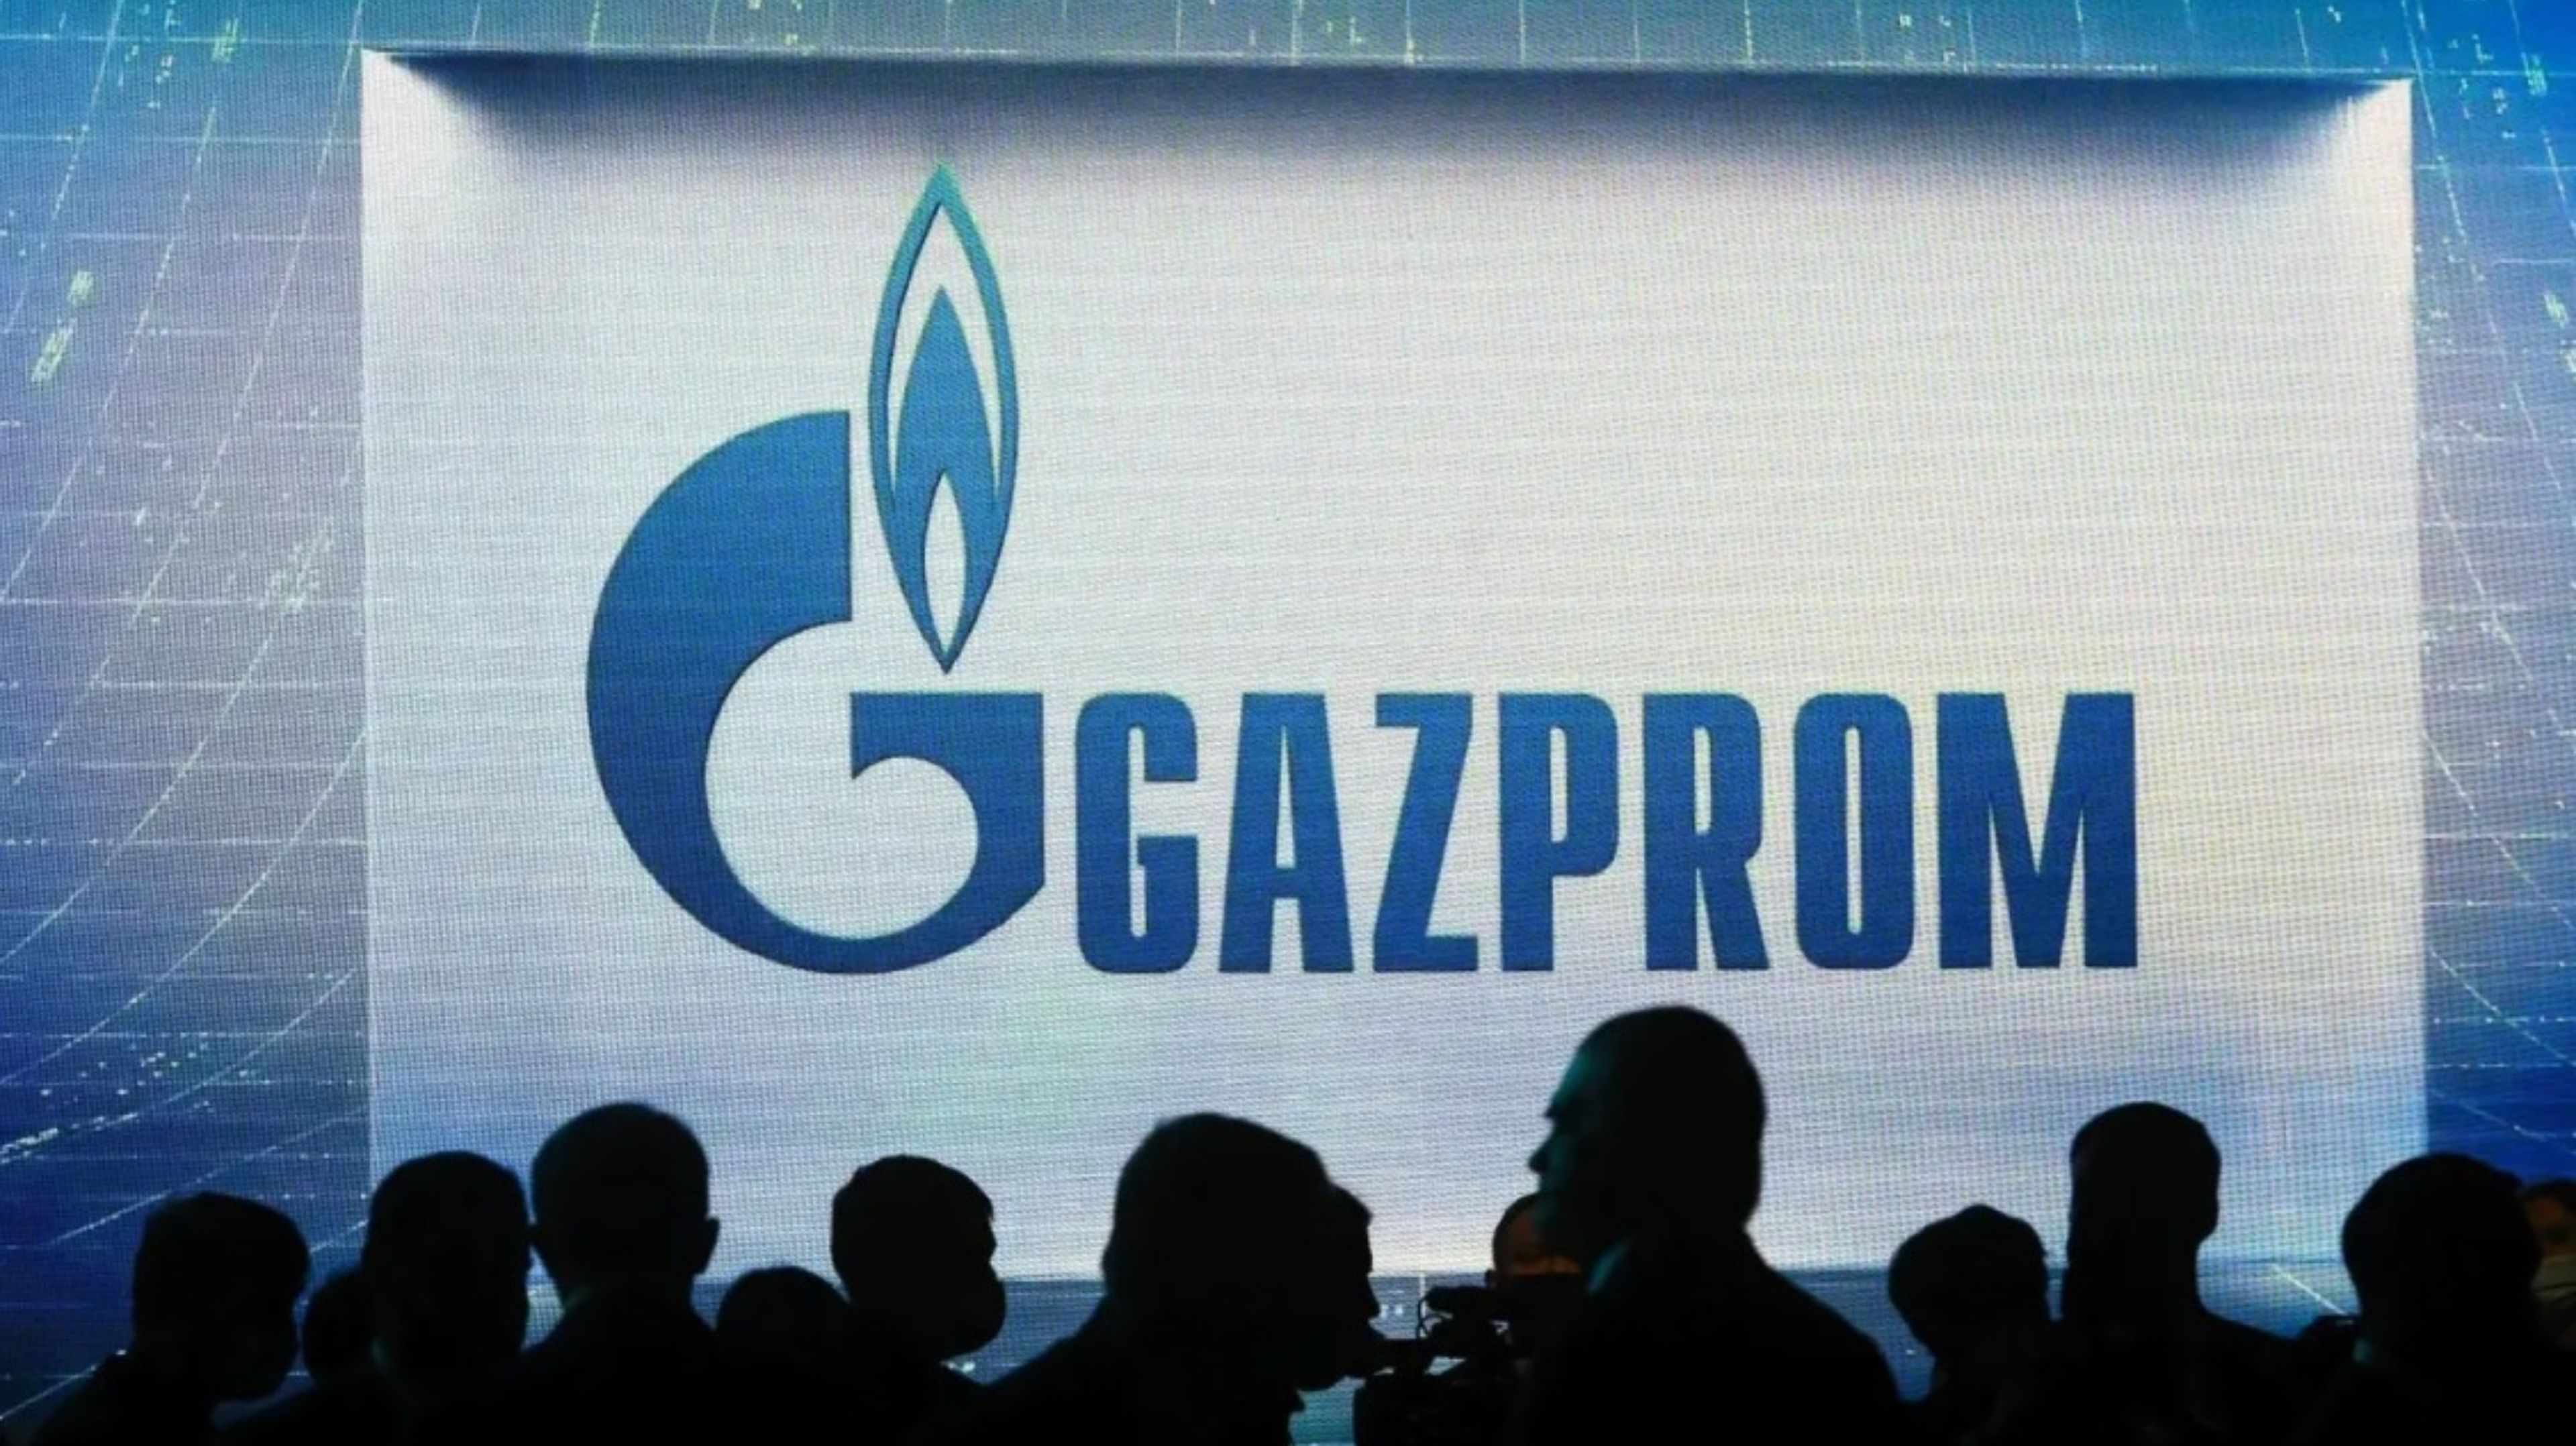 La unidad de Gazprom en Alemania gestiona las instalaciones de almacenamiento de gas, el transporte de gas y el comercio de energía en el país.